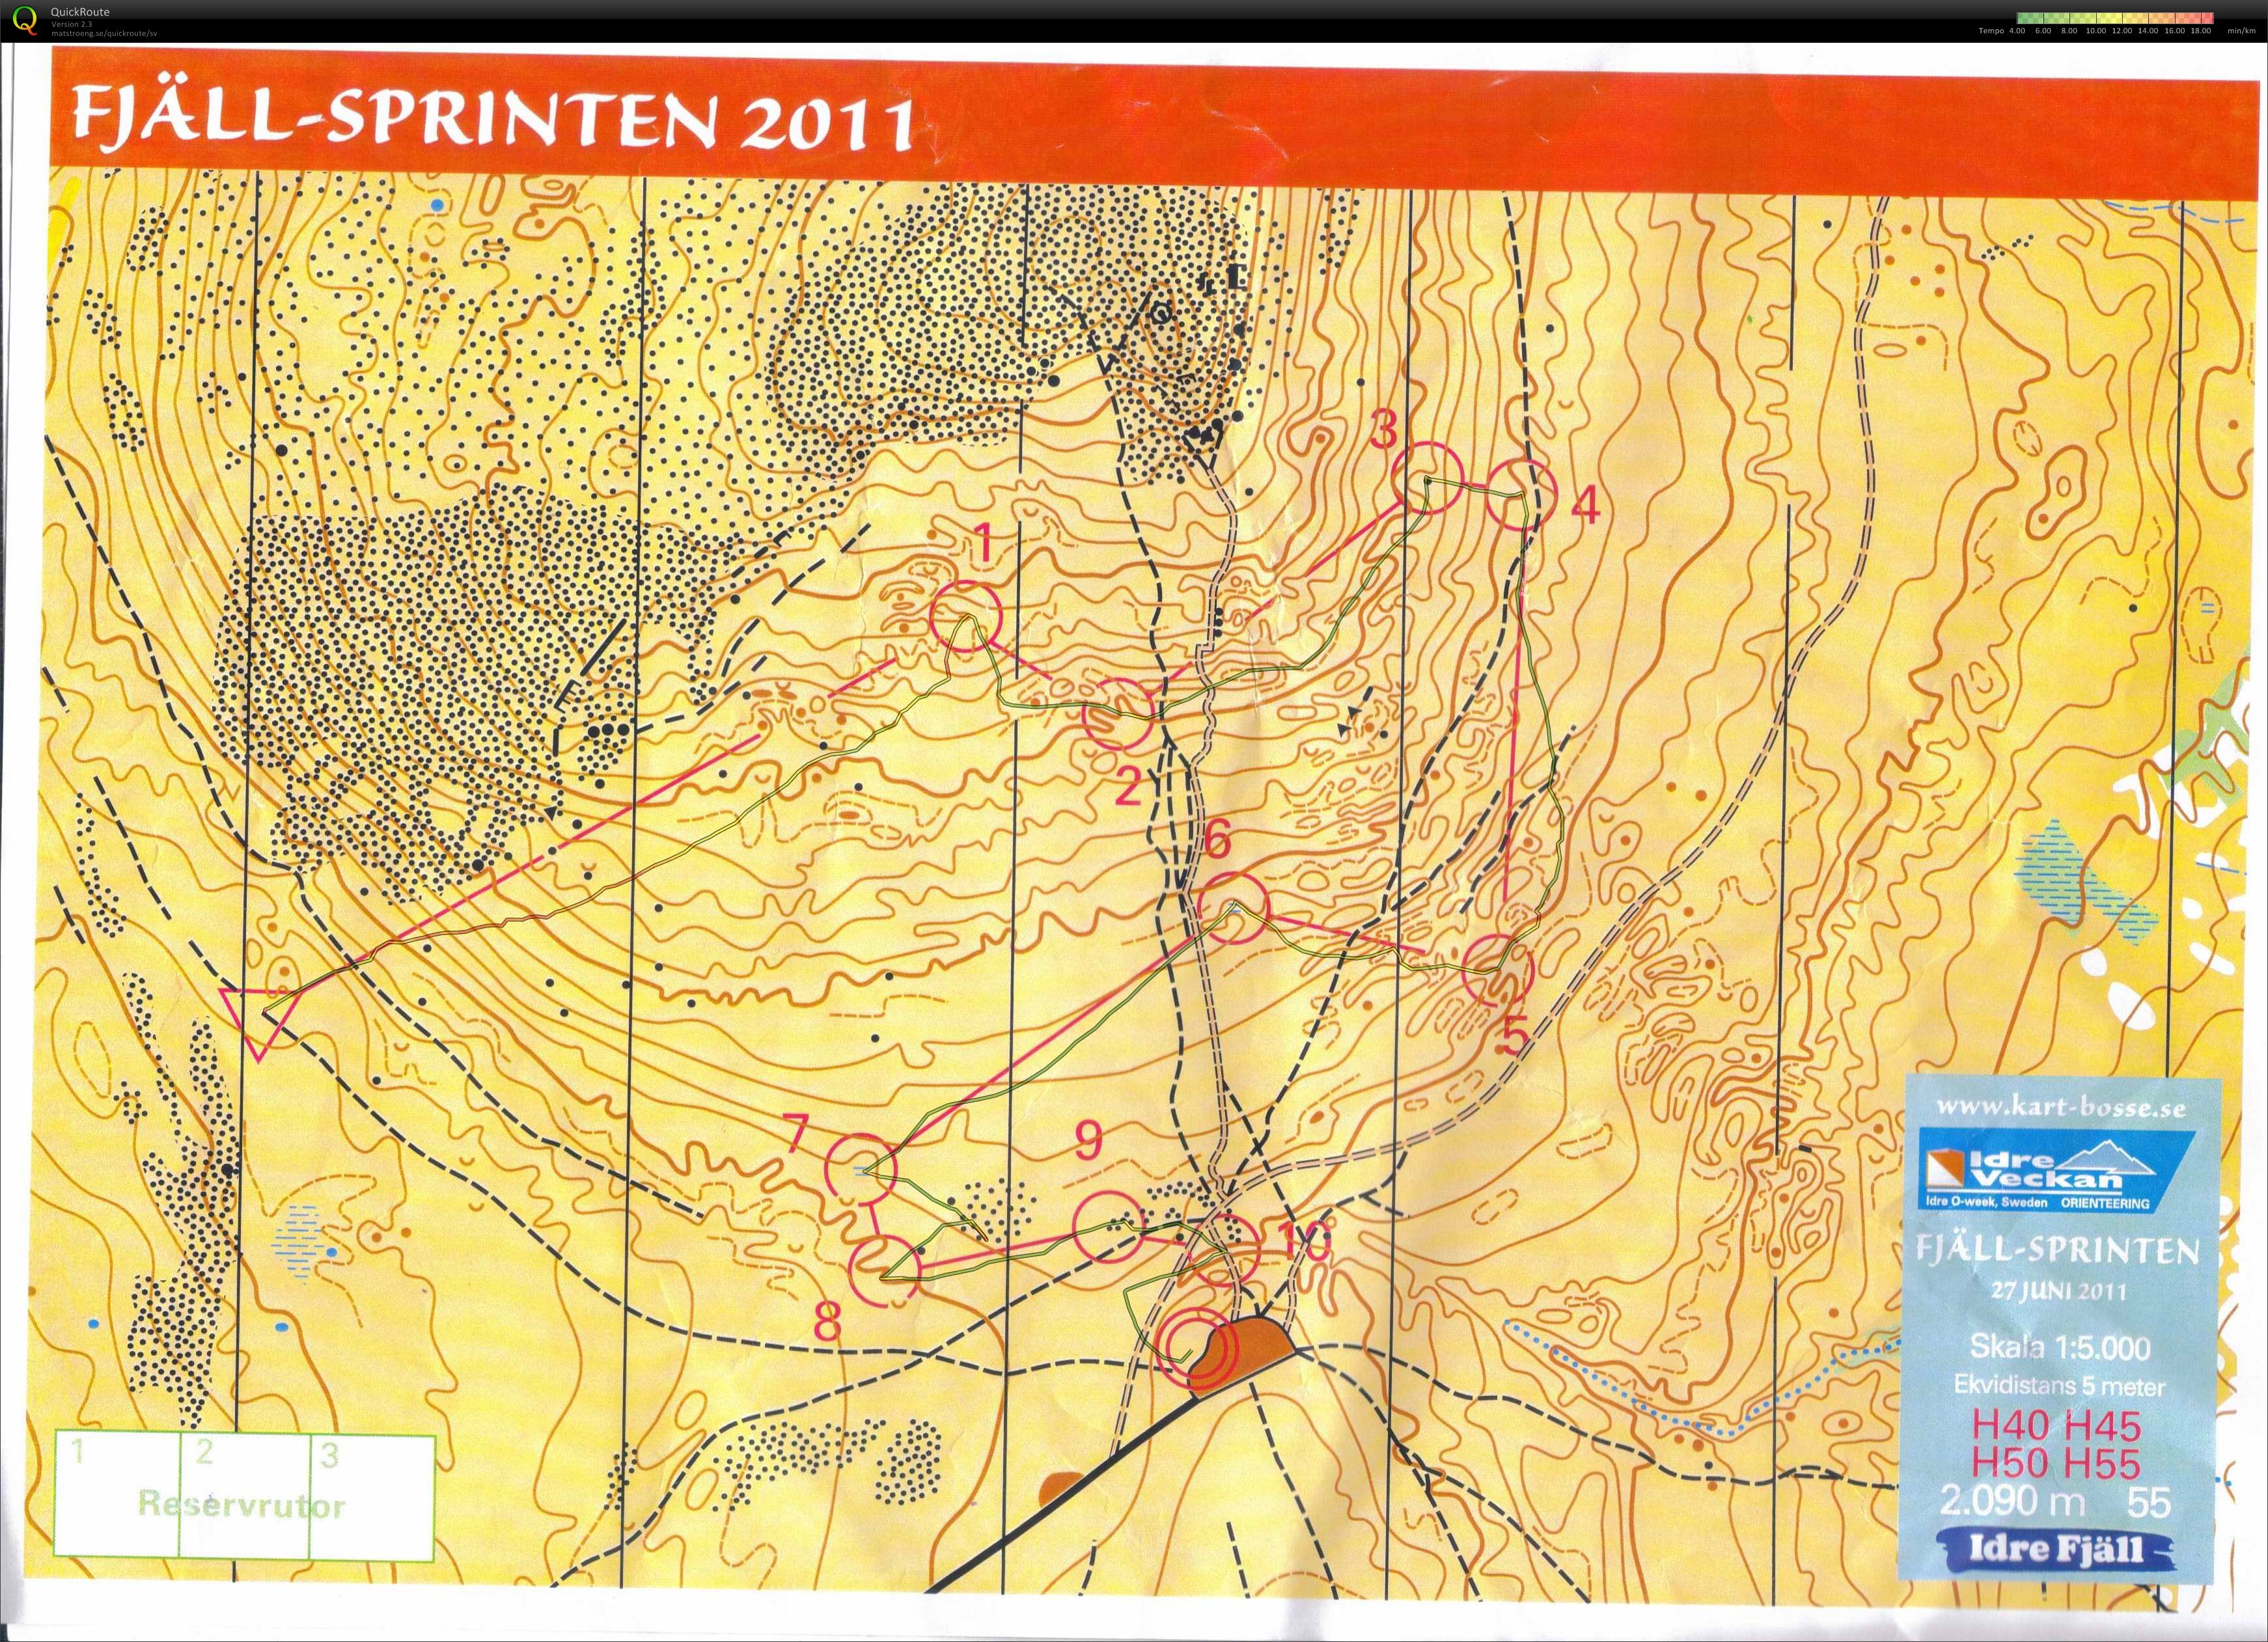 Idre fjällsprint (2011-06-27)